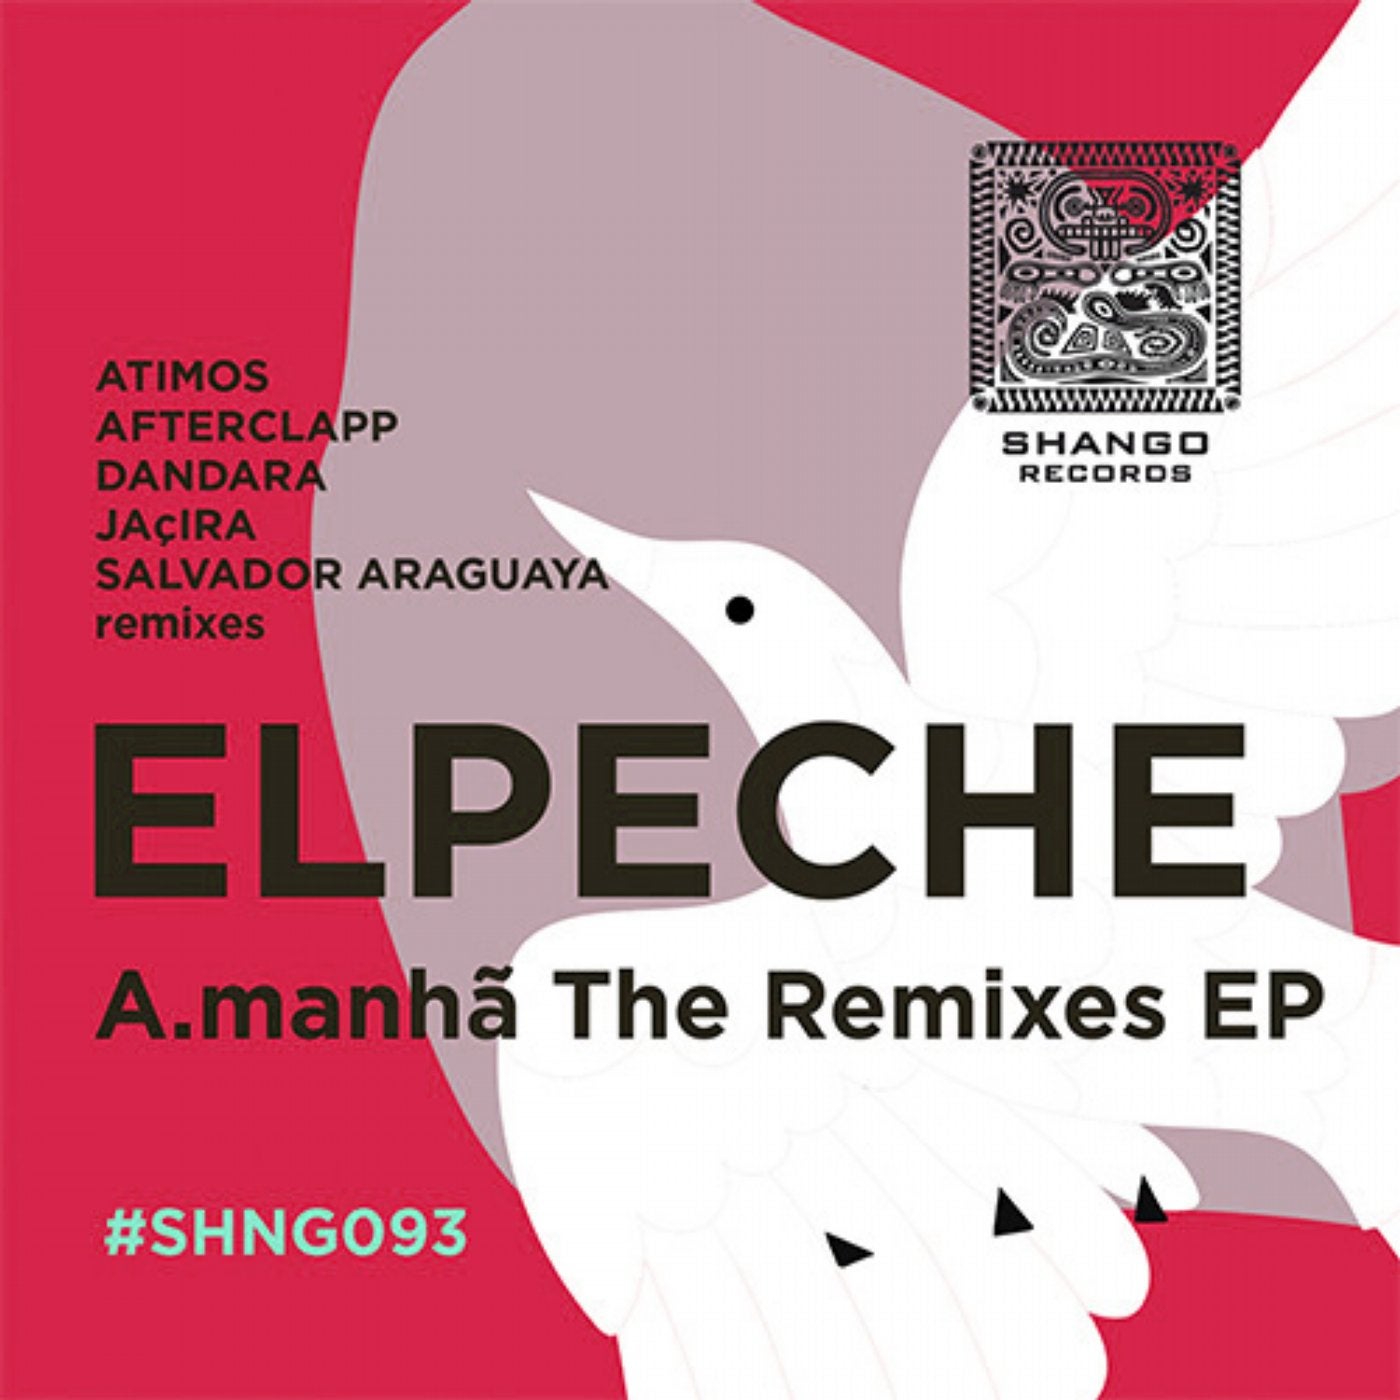 A.manha The Remixes EP